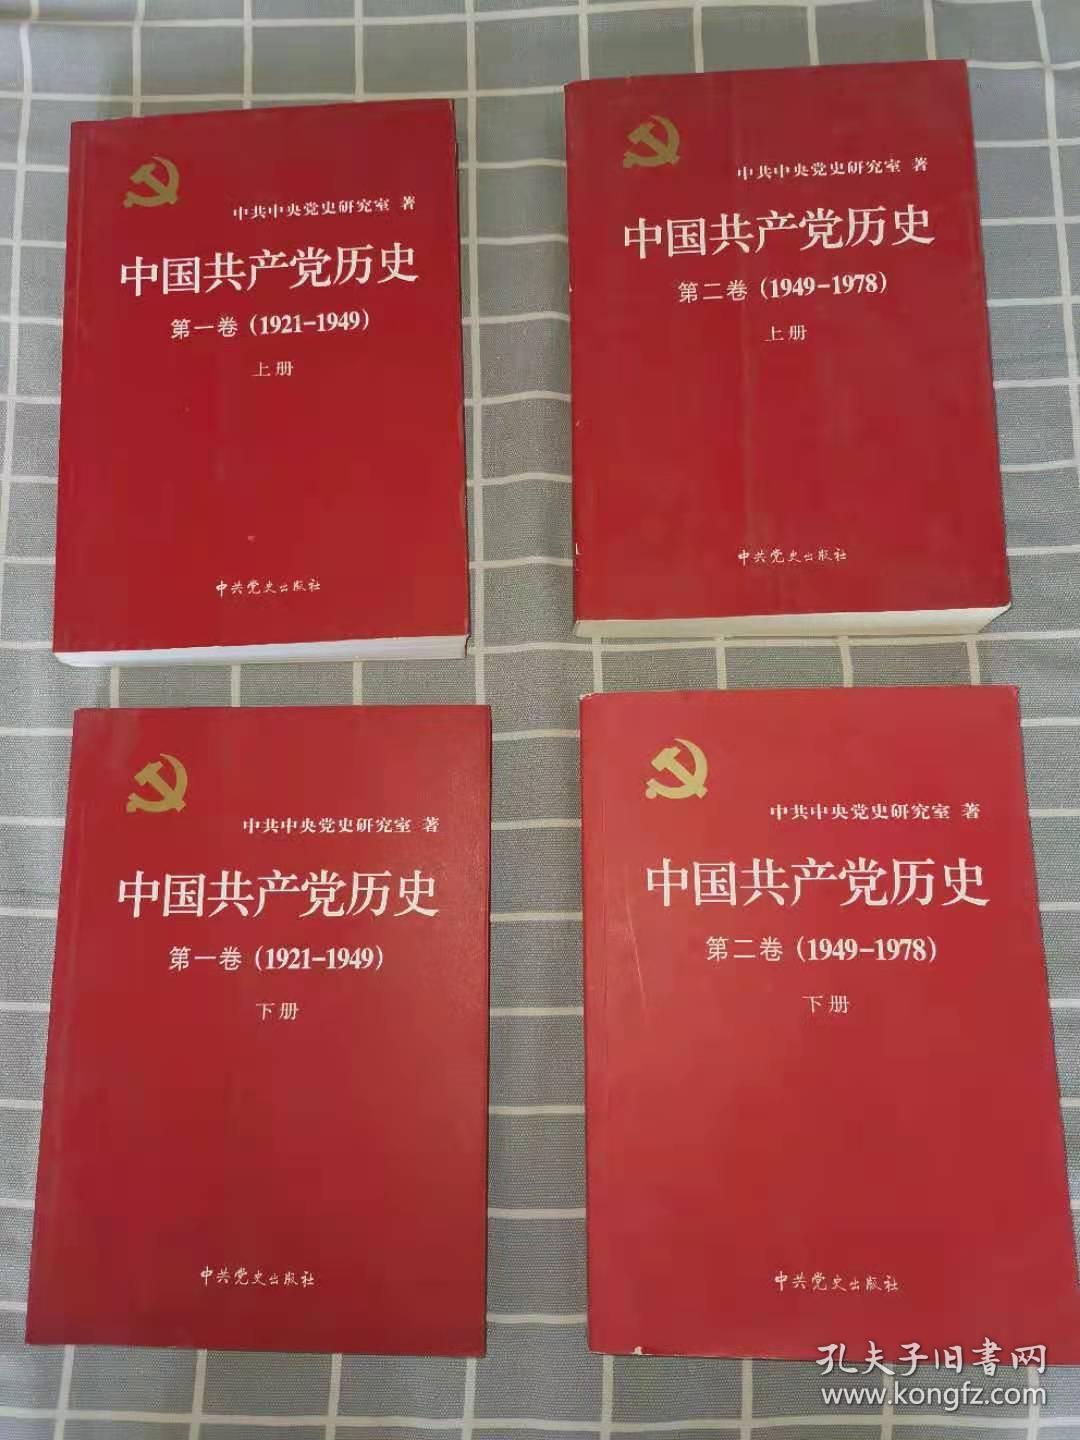 中国共产党历史第一卷（上下册）第二卷（上下册）四册合售